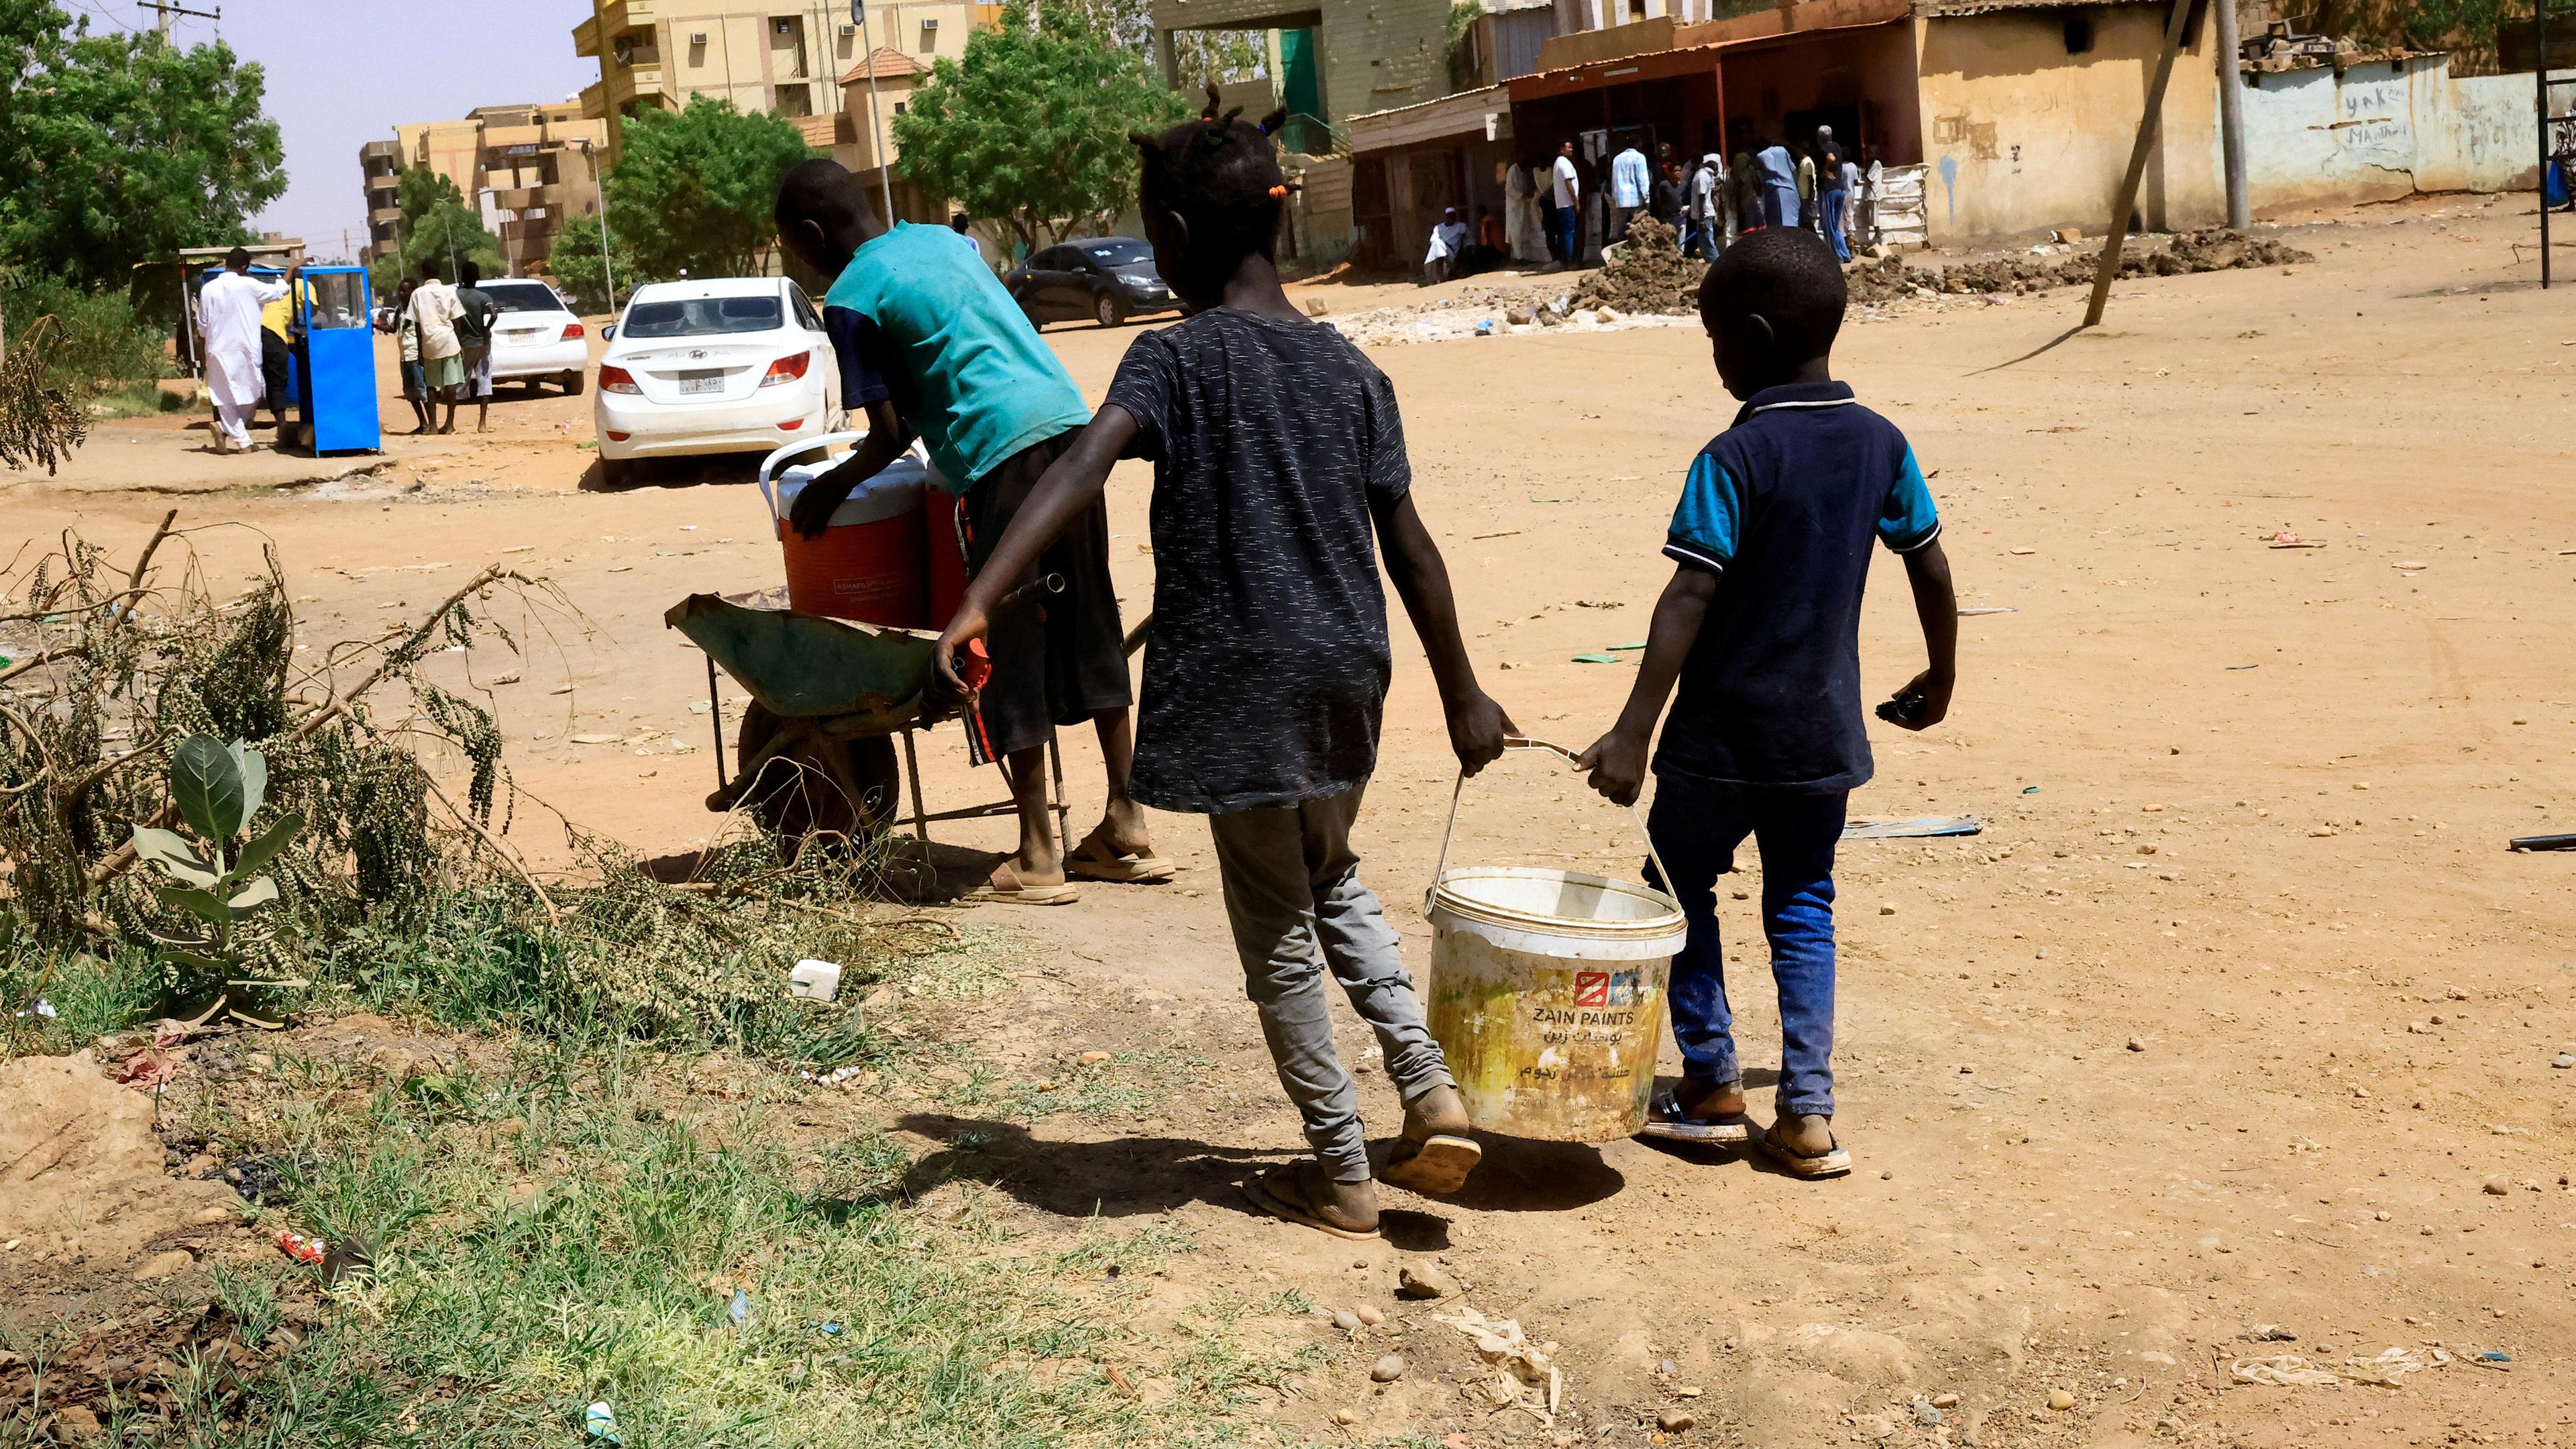 Kinder tragen im Sudan einen Eimer mit Wasser